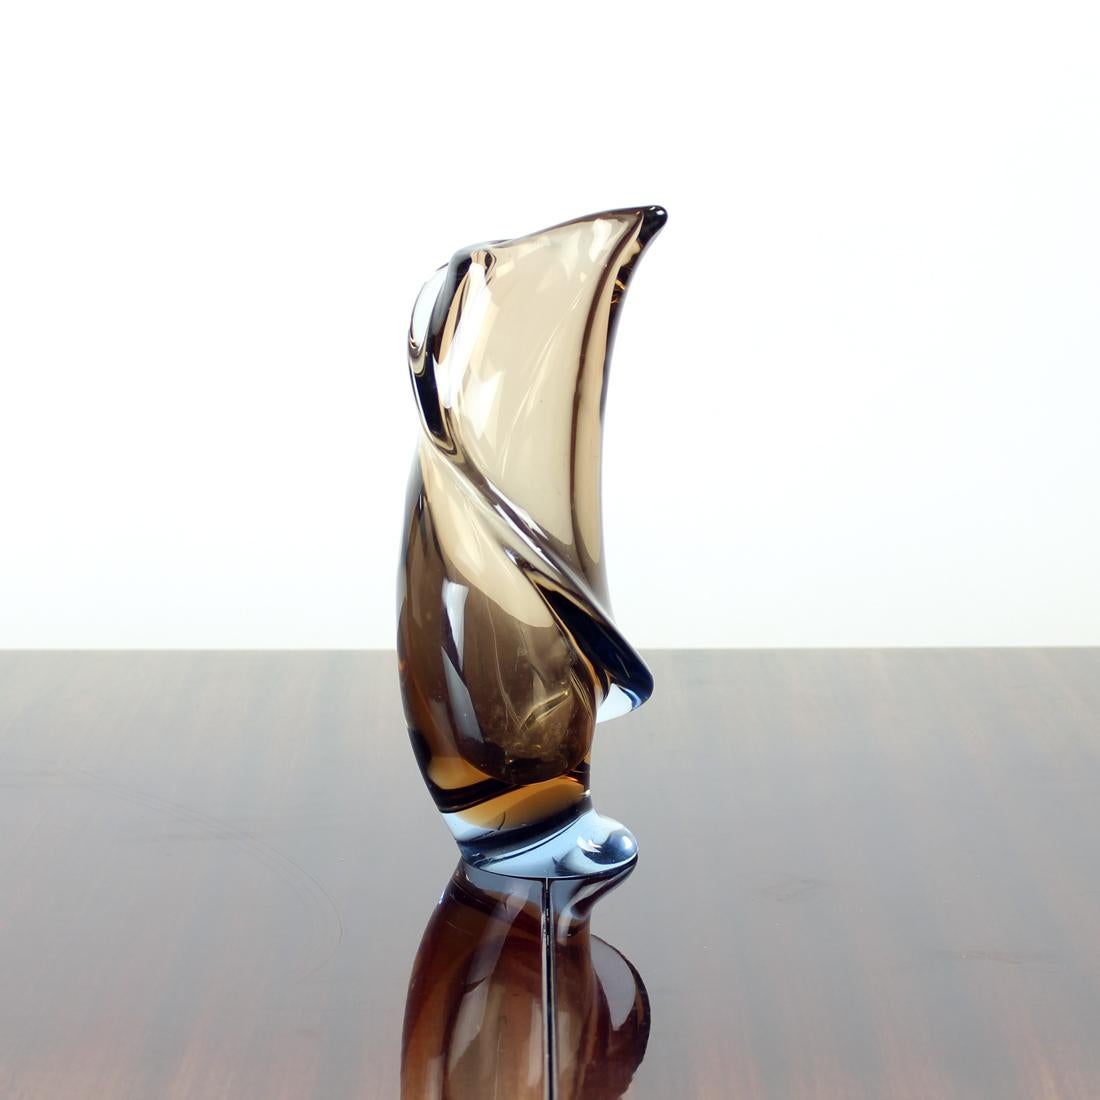 Il s'agit d'une pièce unique. Le vase est en verre d'art moulé à la main. Produit en Tchécoslovaquie dans les années 1960 par Emanuel Beranek pour l'usine de Skrdlovice Glass Union. La tradition verrière était extraordinaire en Tchécoslovaquie dans